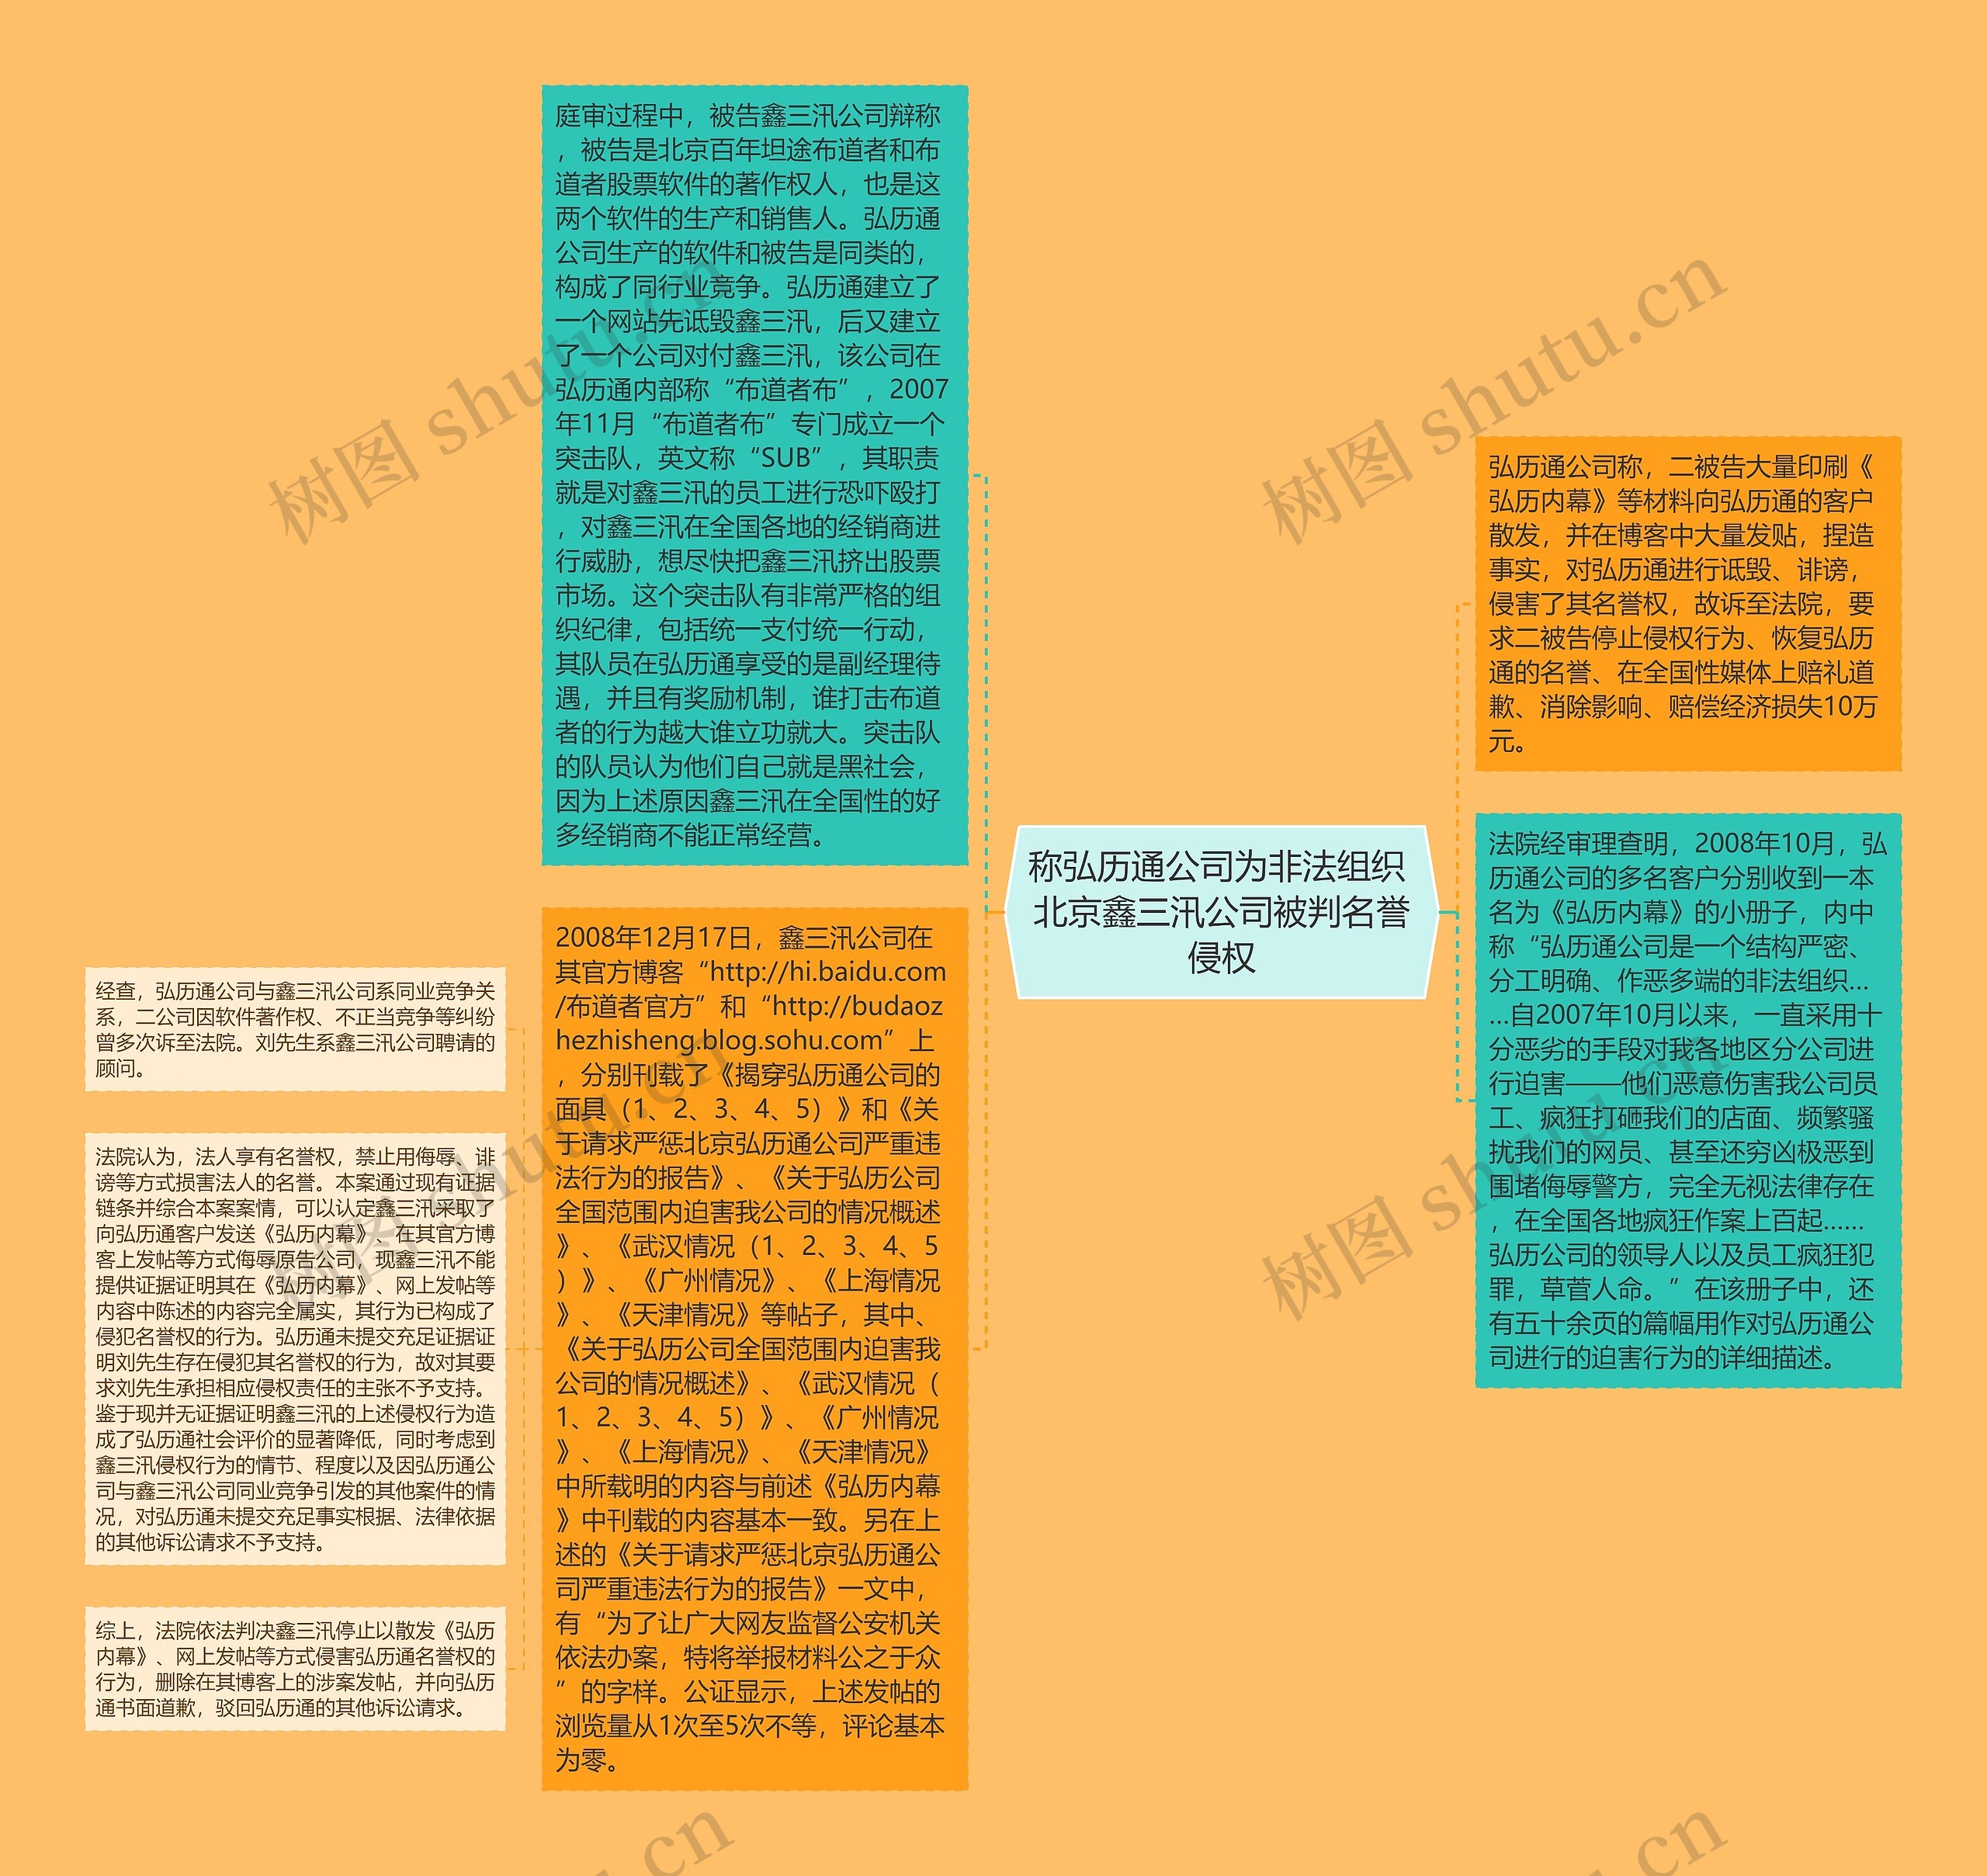 称弘历通公司为非法组织 北京鑫三汛公司被判名誉侵权